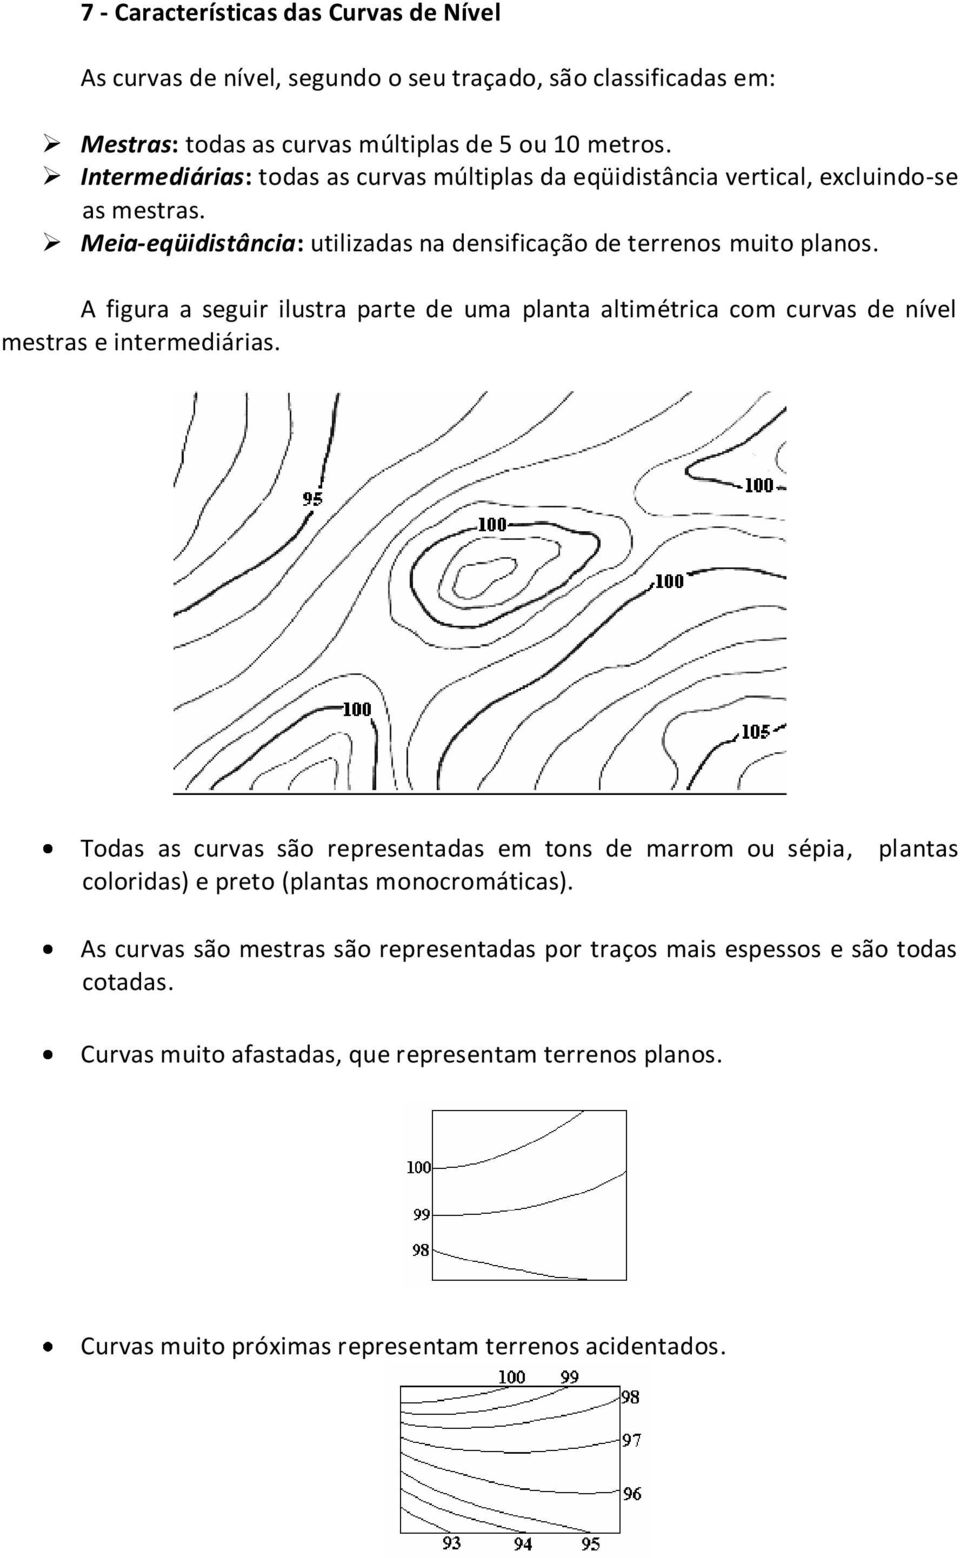 A figura a seguir ilustra parte de uma planta altimétrica com curvas de nível mestras e intermediárias.